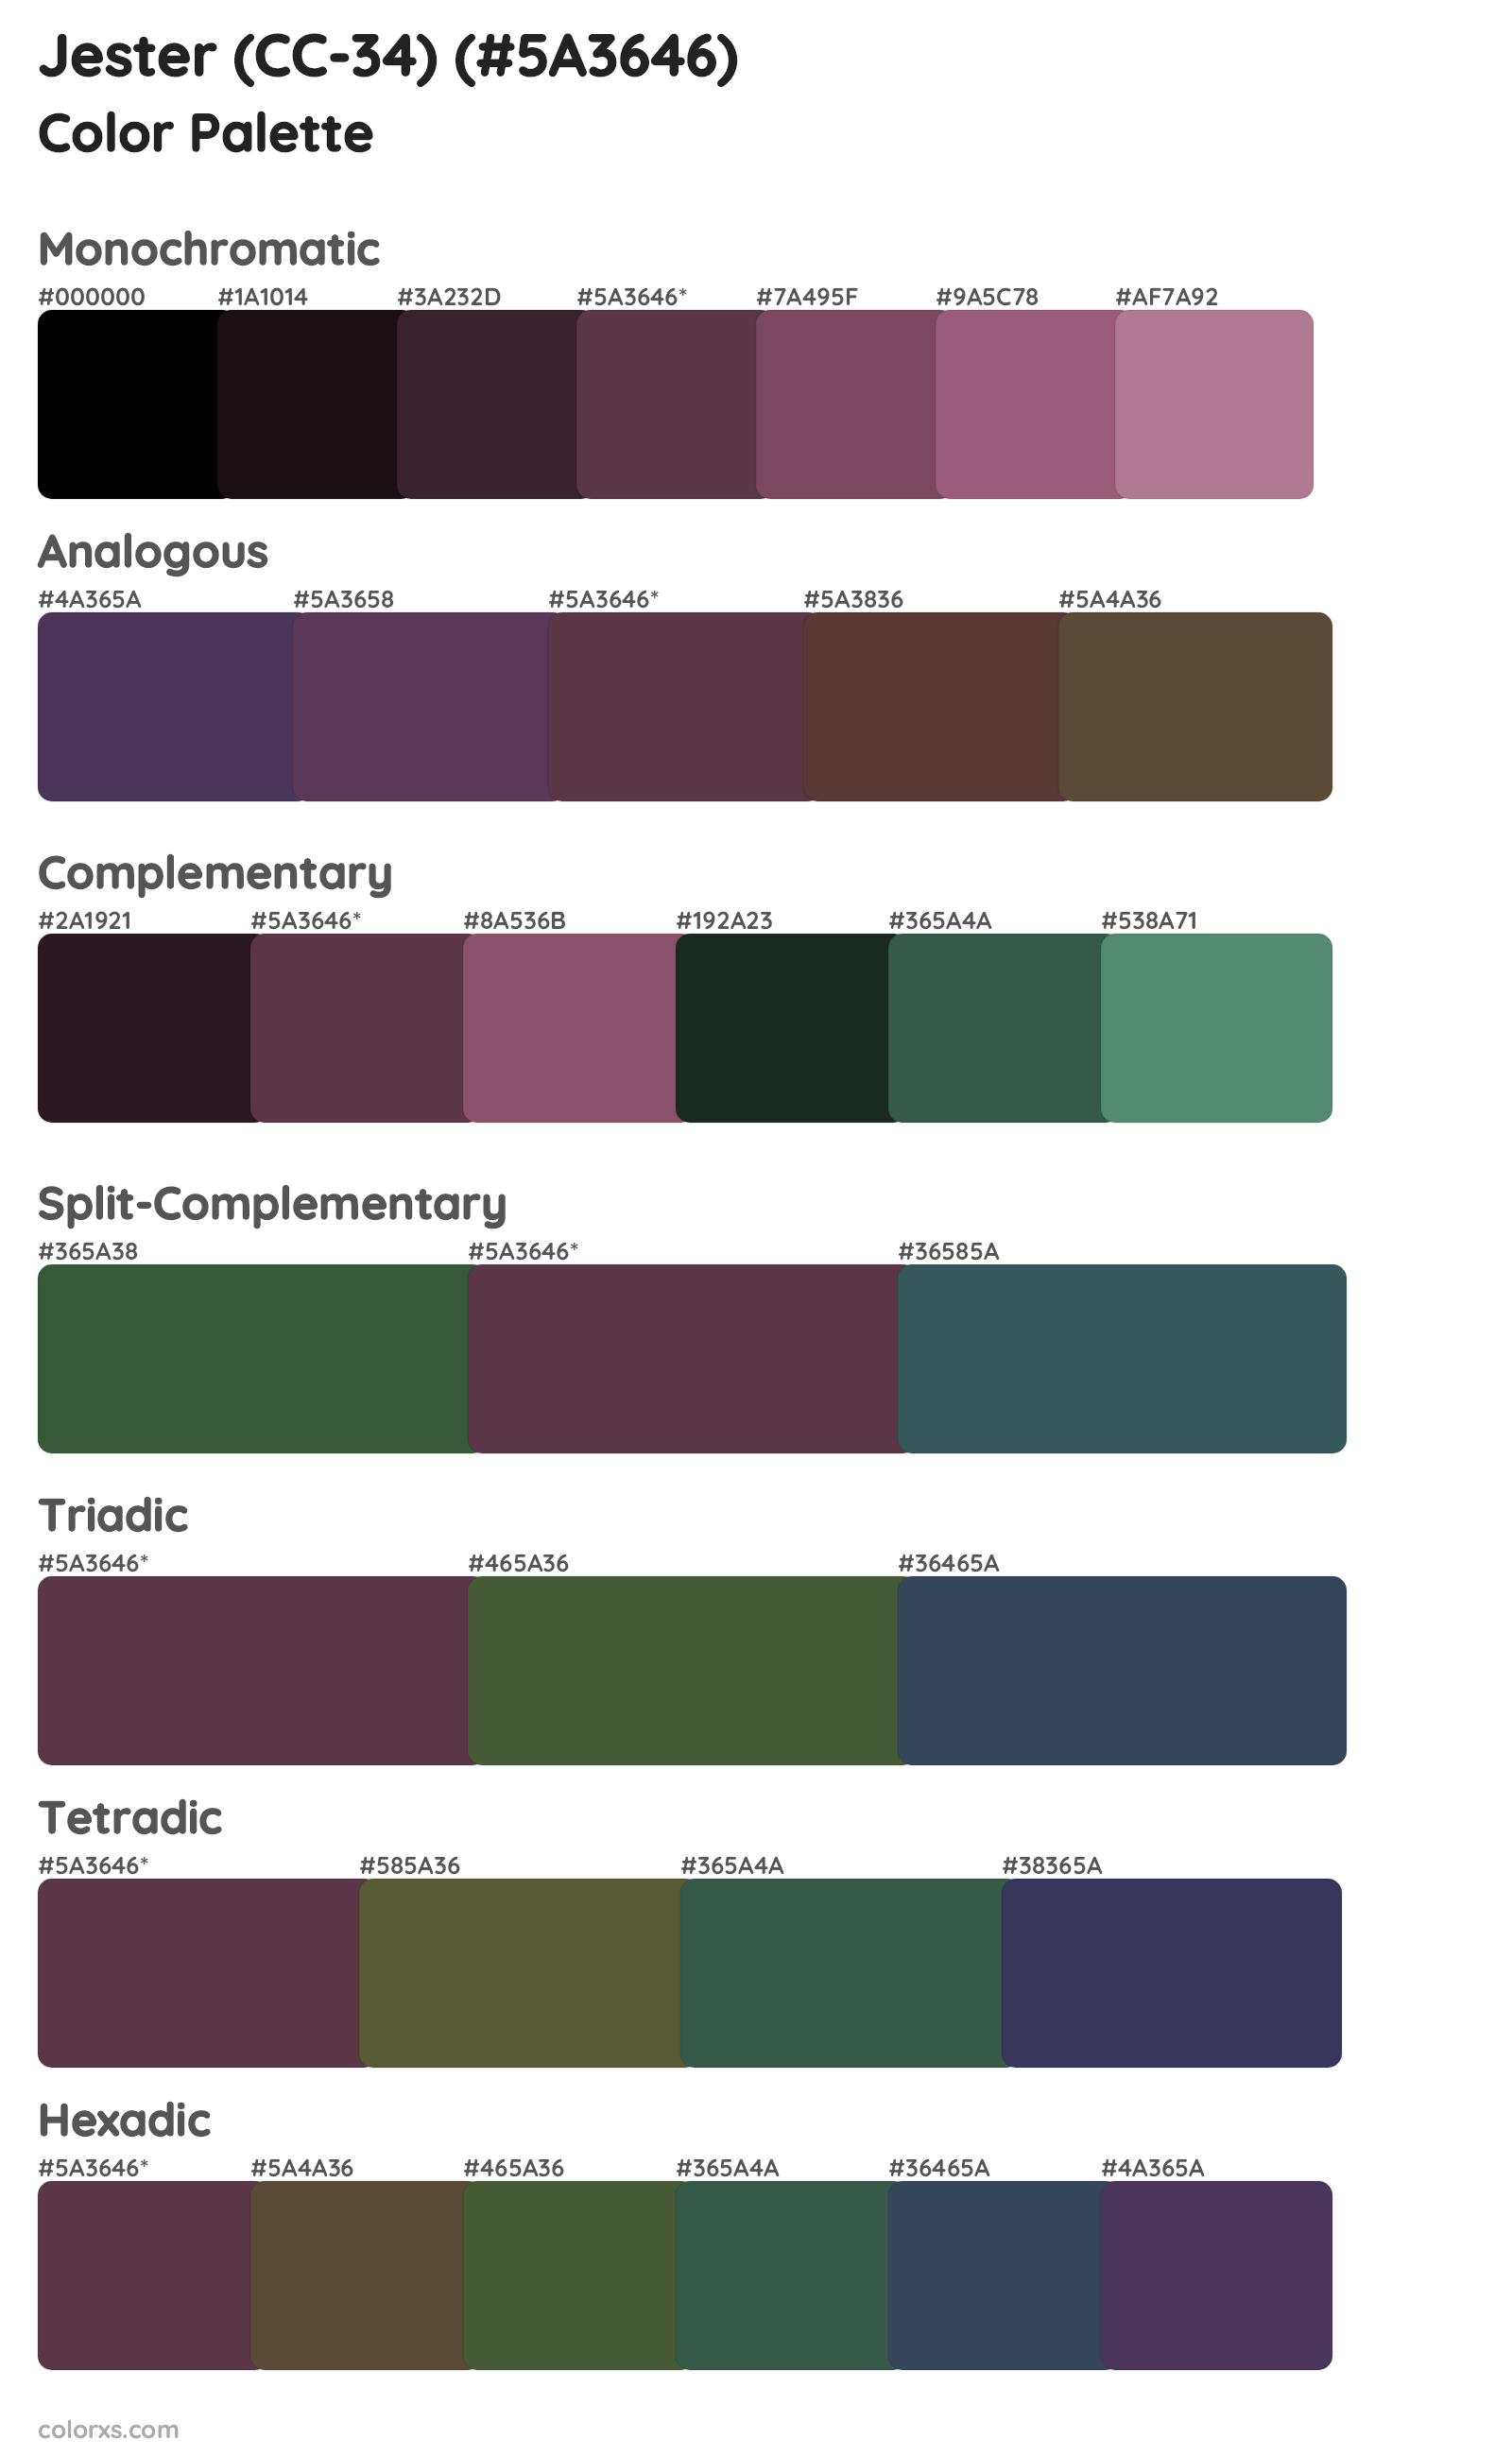 Jester (CC-34) Color Scheme Palettes